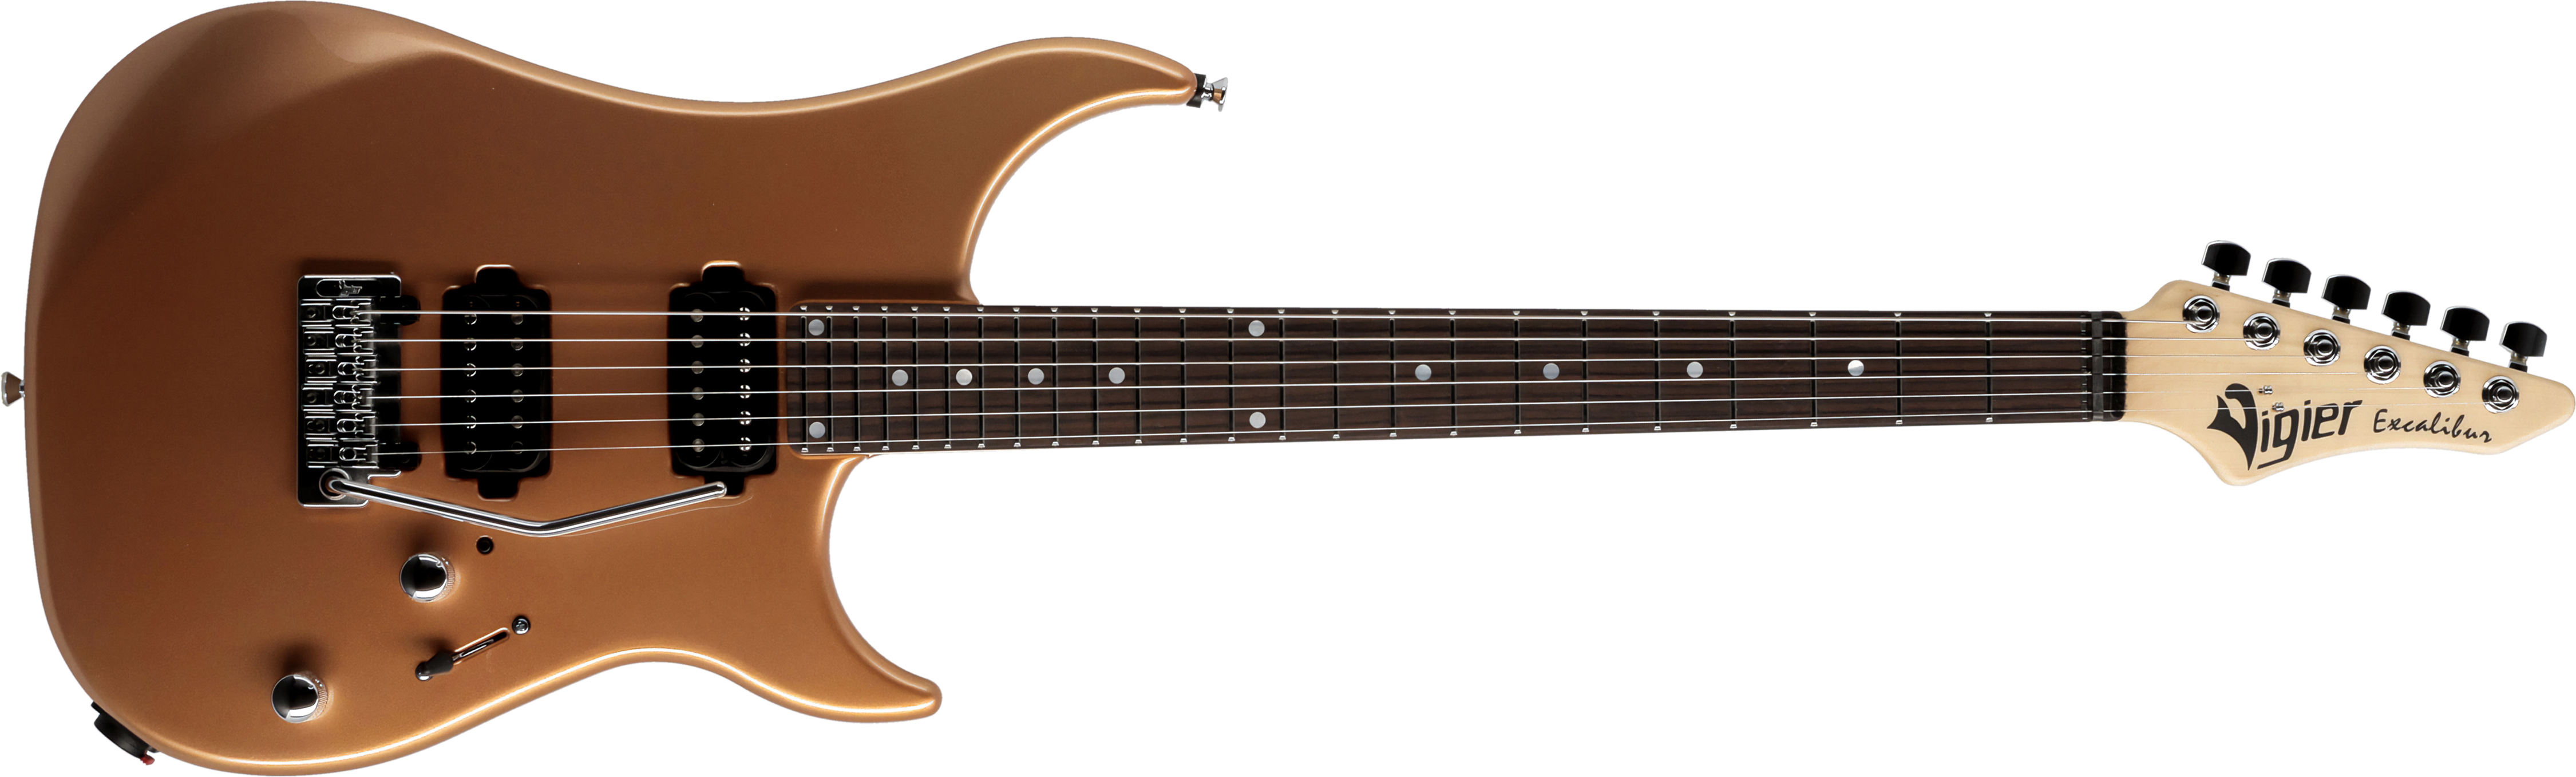 Vigier Excalibur Thirteen 2h Trem Rw - Monarchy Gold - E-Gitarre in Str-Form - Main picture